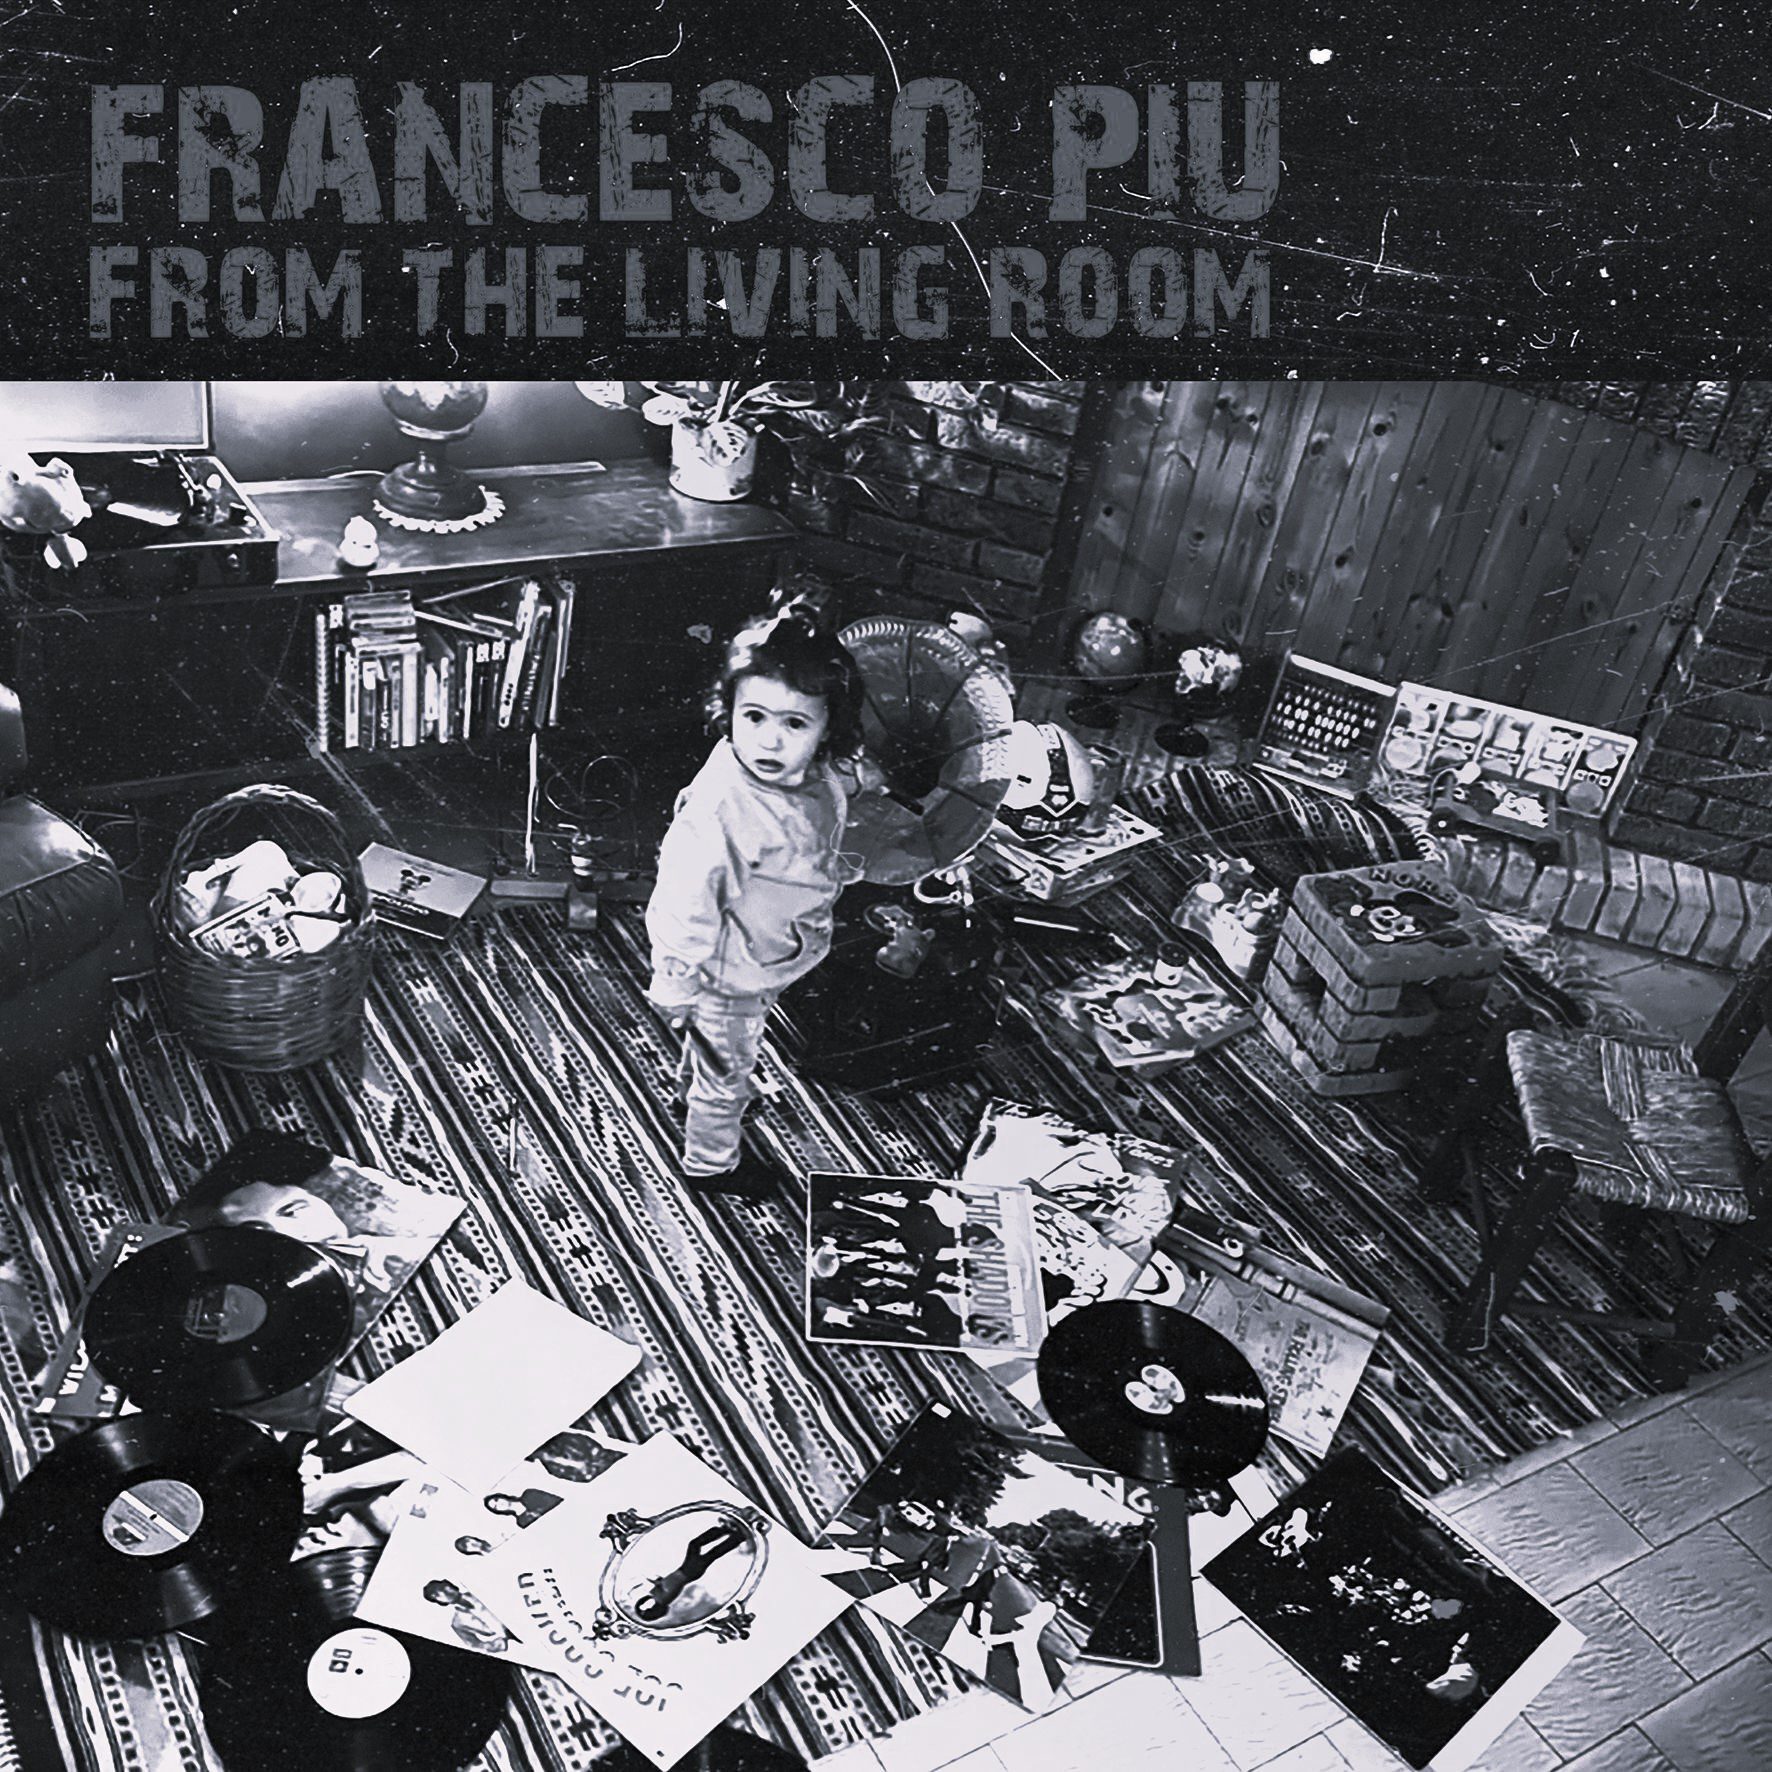 Francesco Piu From The Living Room cover album